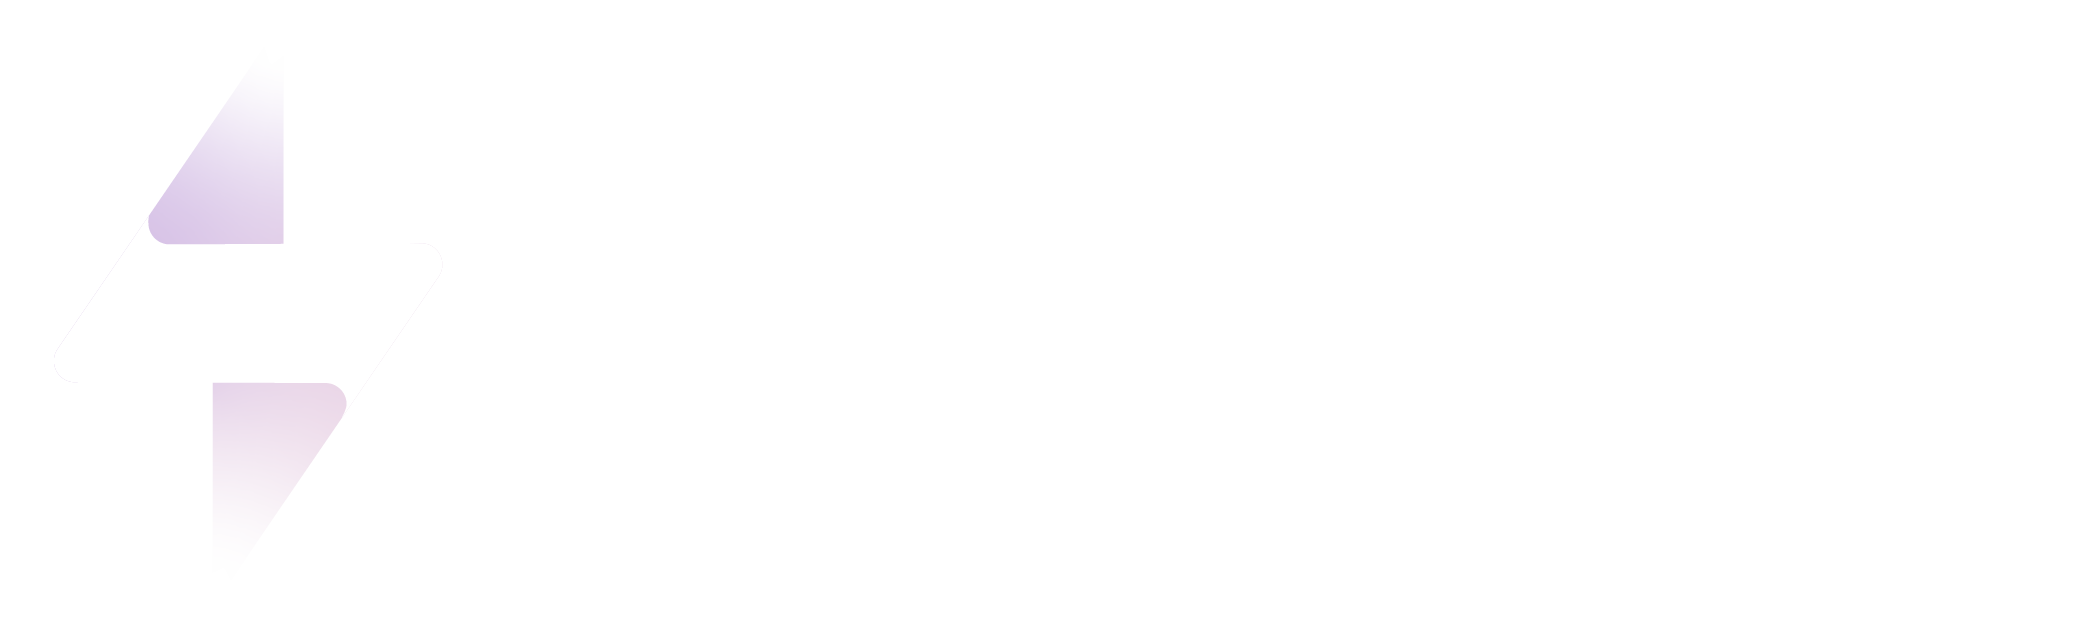 StartSite